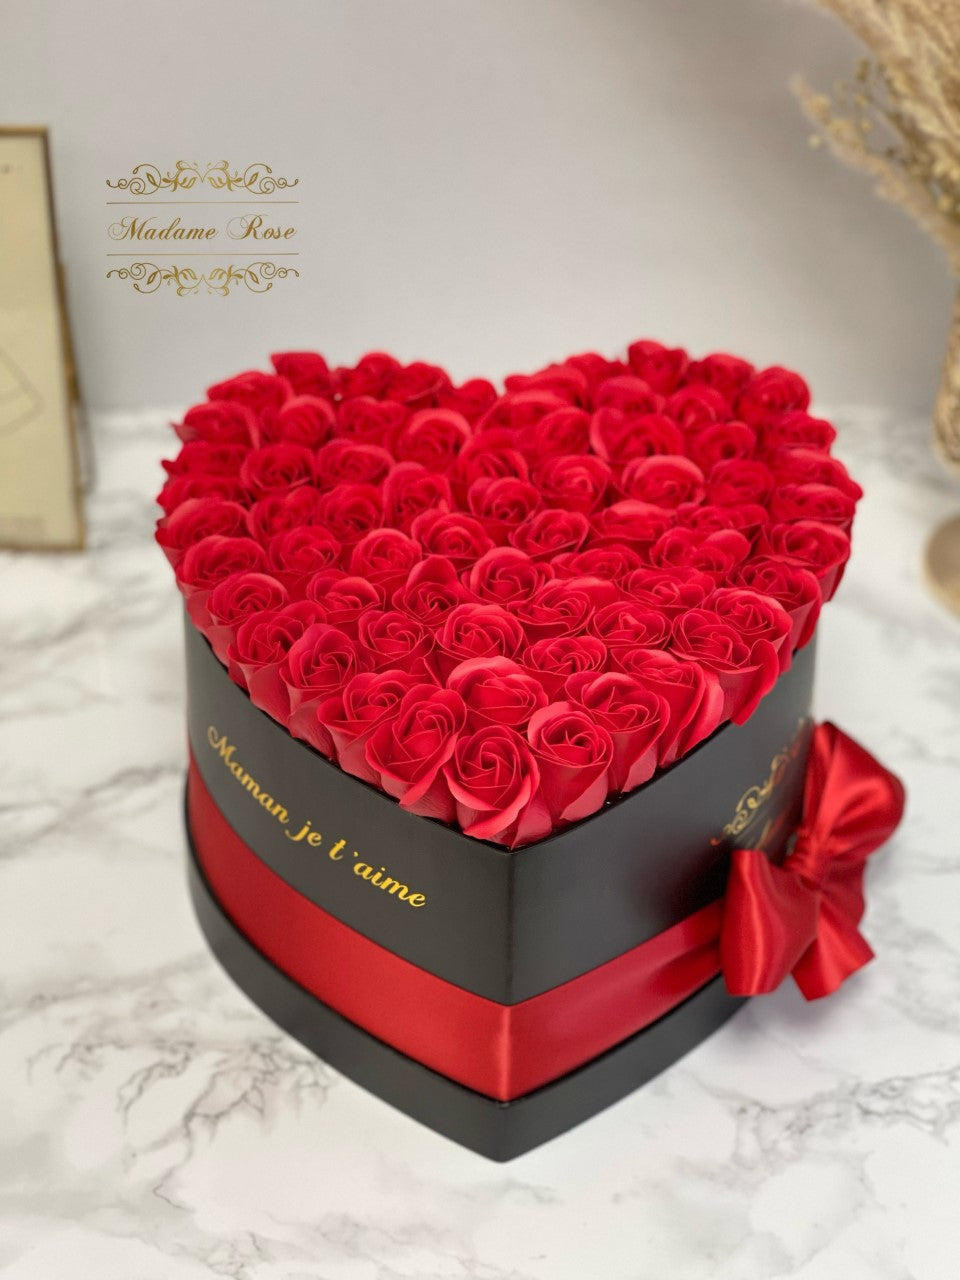 Boite cadeau de roses de savon rouge, fleurs amour